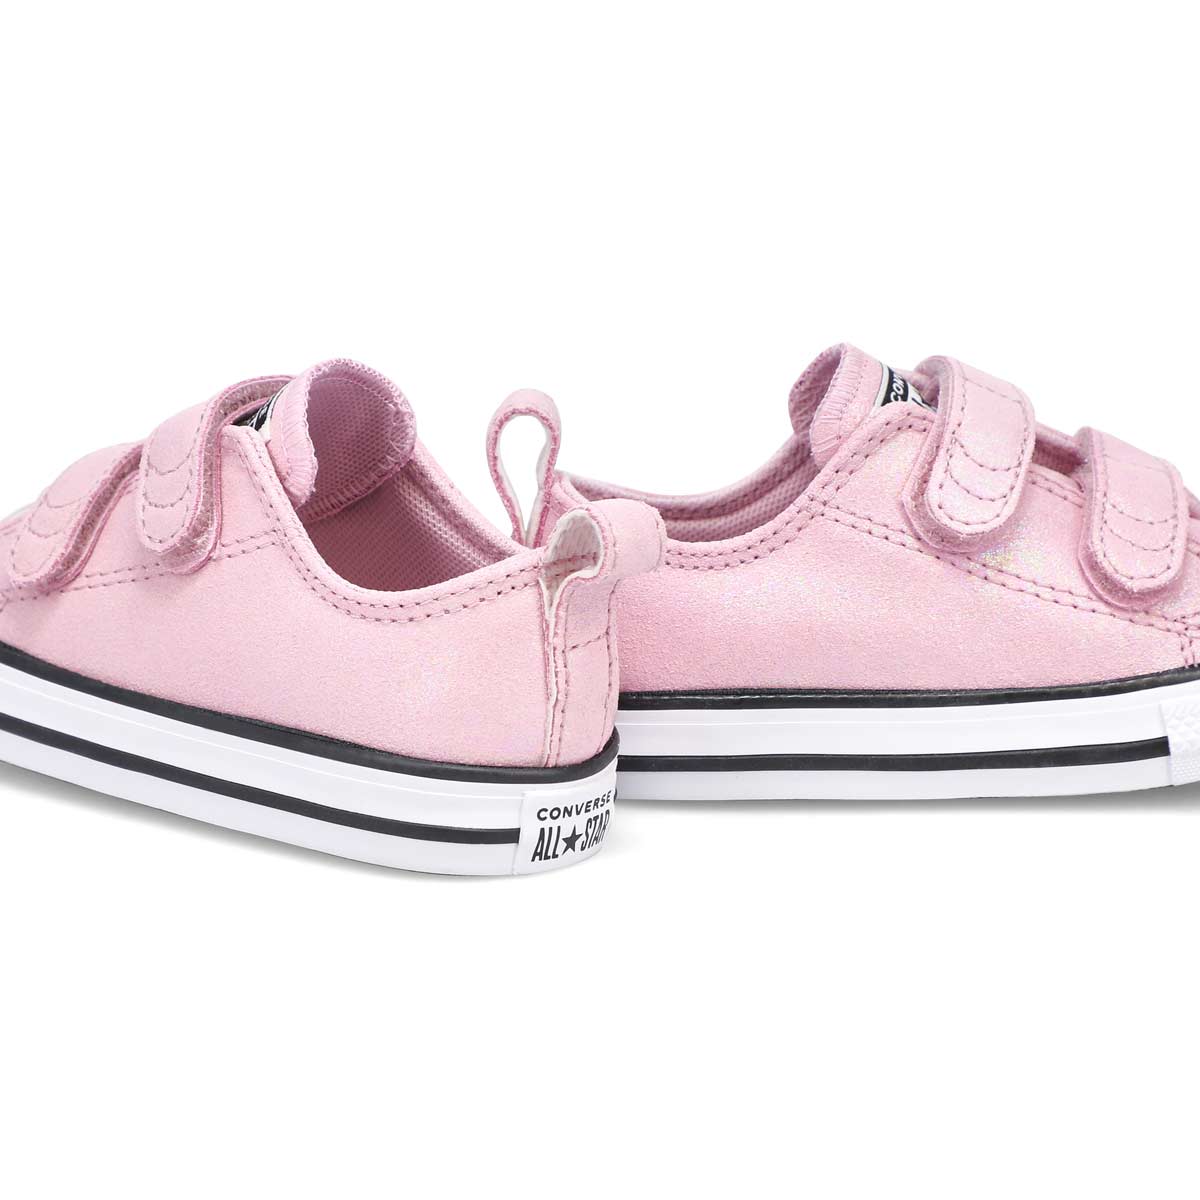 Infants' All Star 2V Sneaker - Pink/White/Black